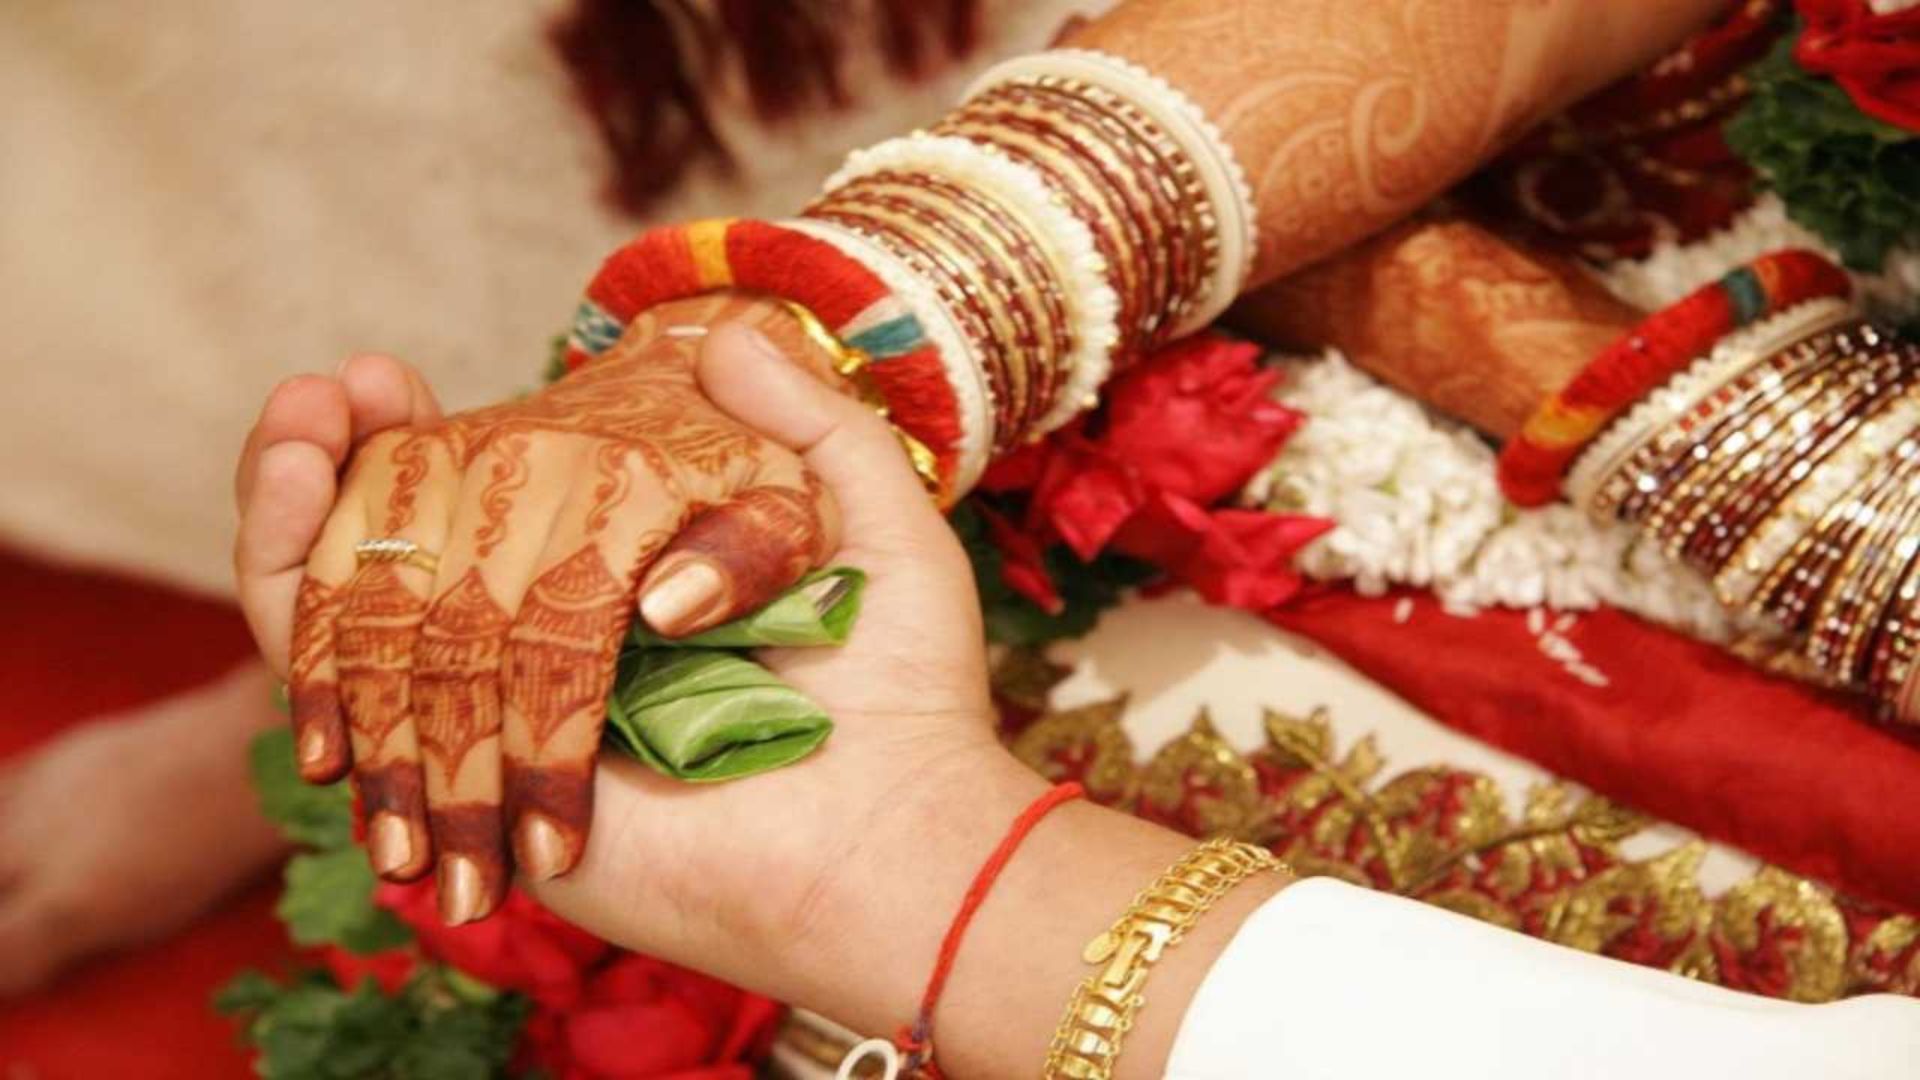 Hindu wedding